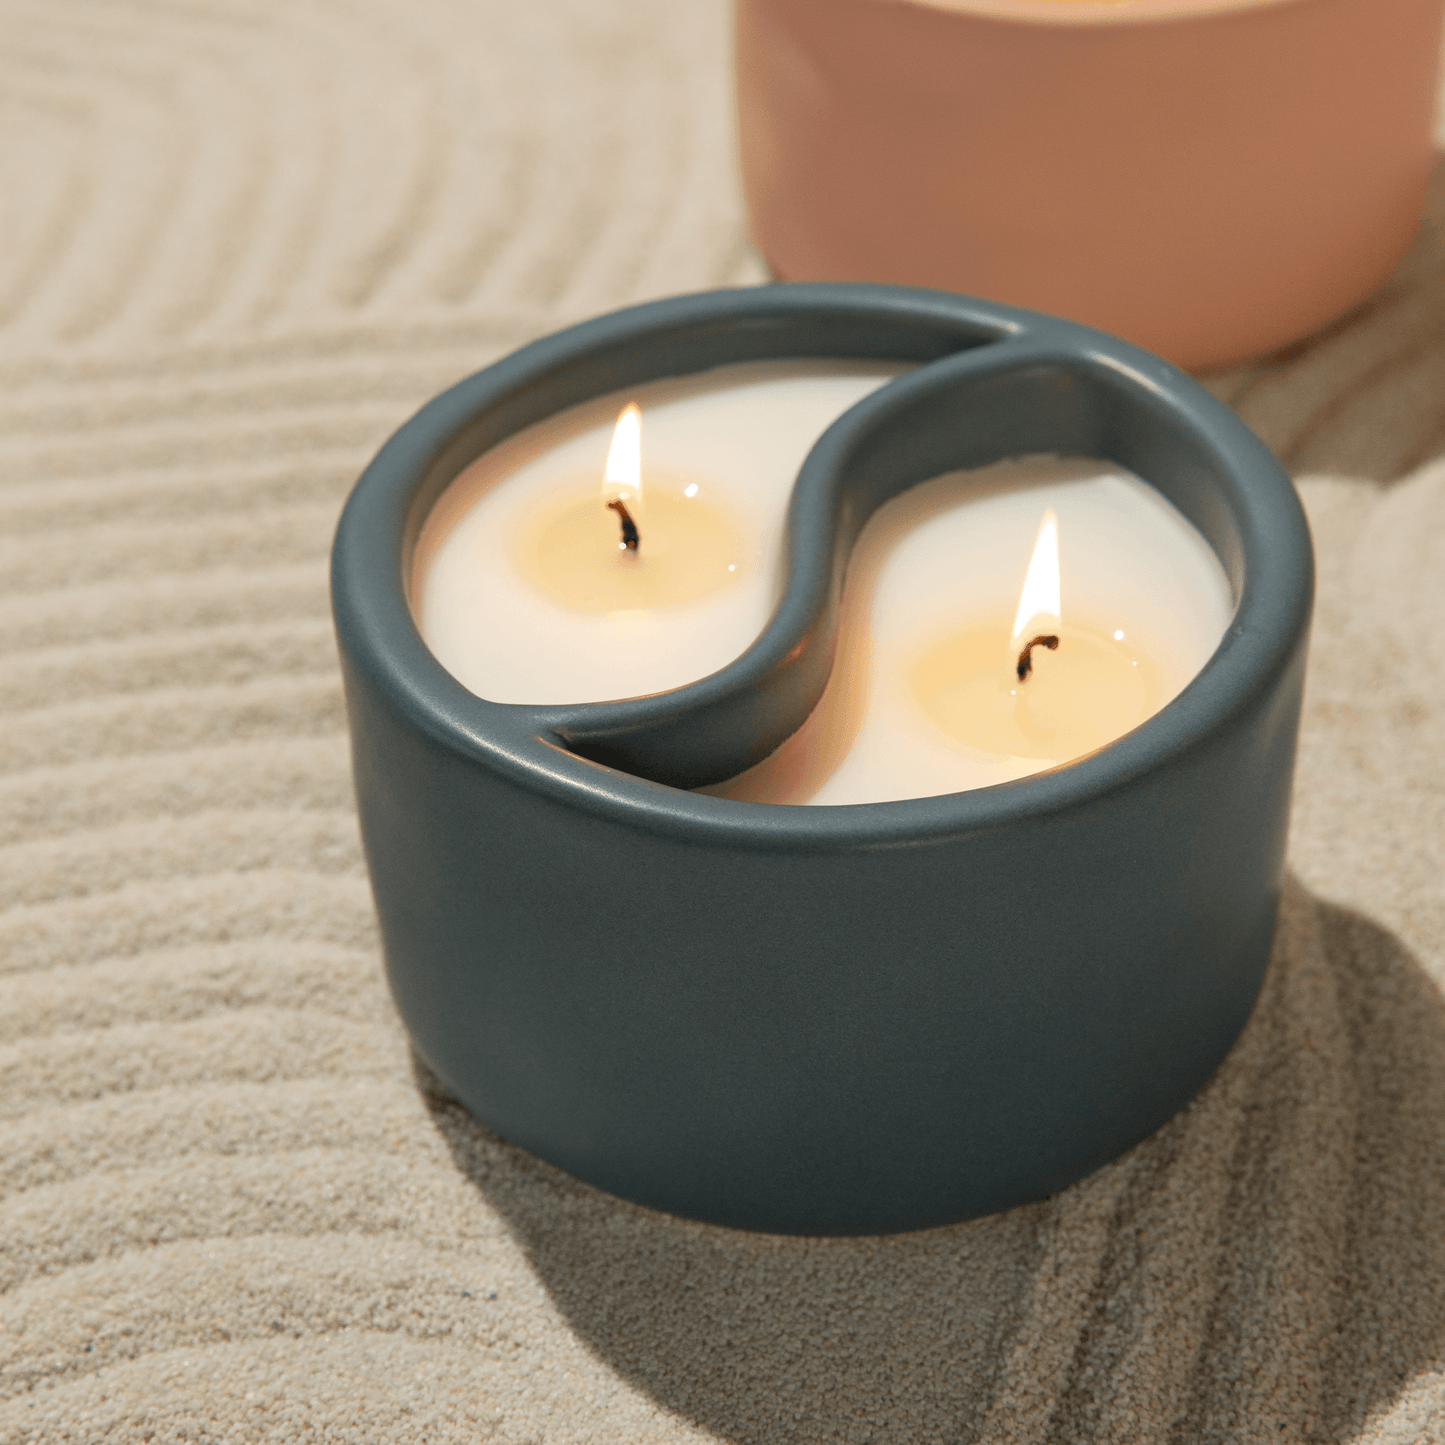 Yin Yang candle on soft background